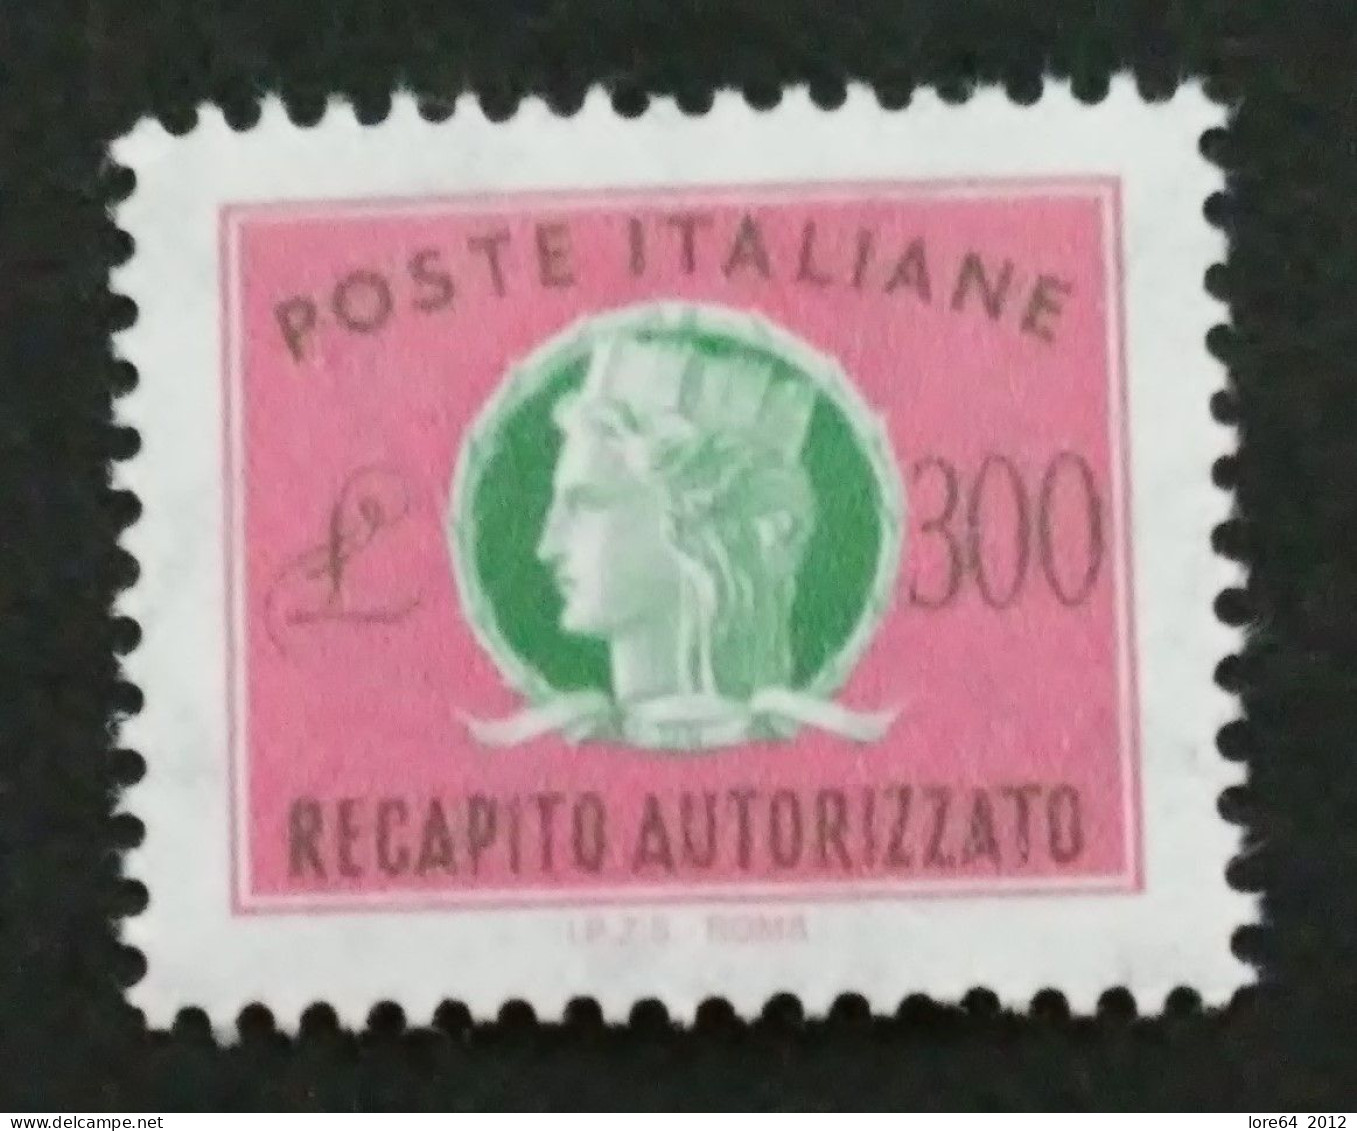 ITALIA 1987 - Recapito Autorizzato N° Catalogo Unificato 17 Nuovo** - Express-post/pneumatisch